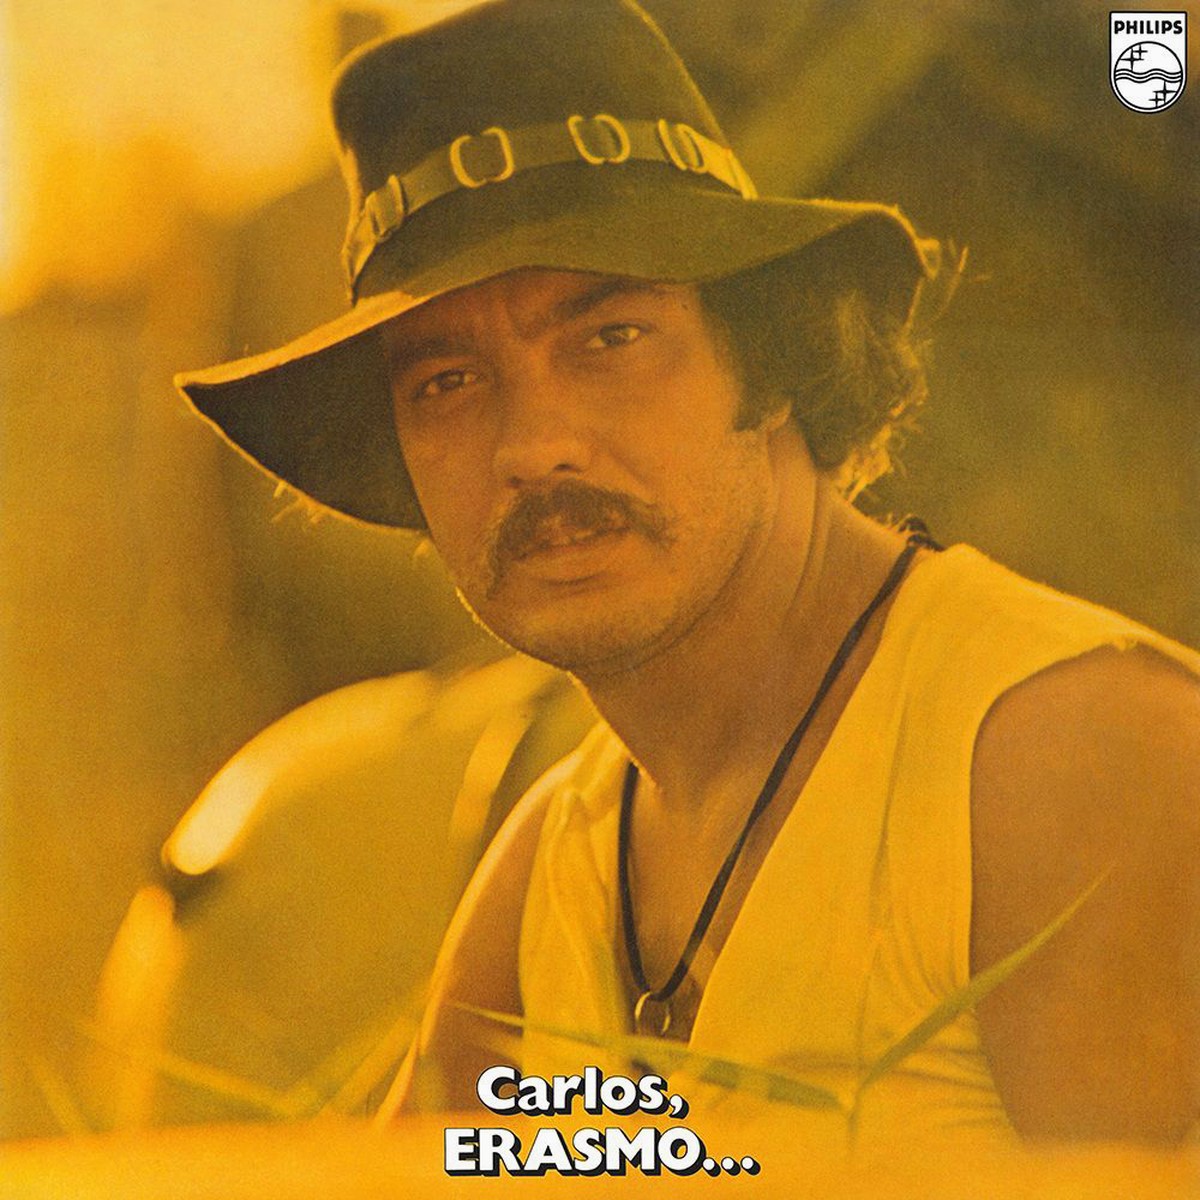 Carlos, Erasmo...', álbum definidor do 'Tremendão', faz jus ao culto 50  anos após a edição original de 1971 | Blog do Mauro Ferreira | G1